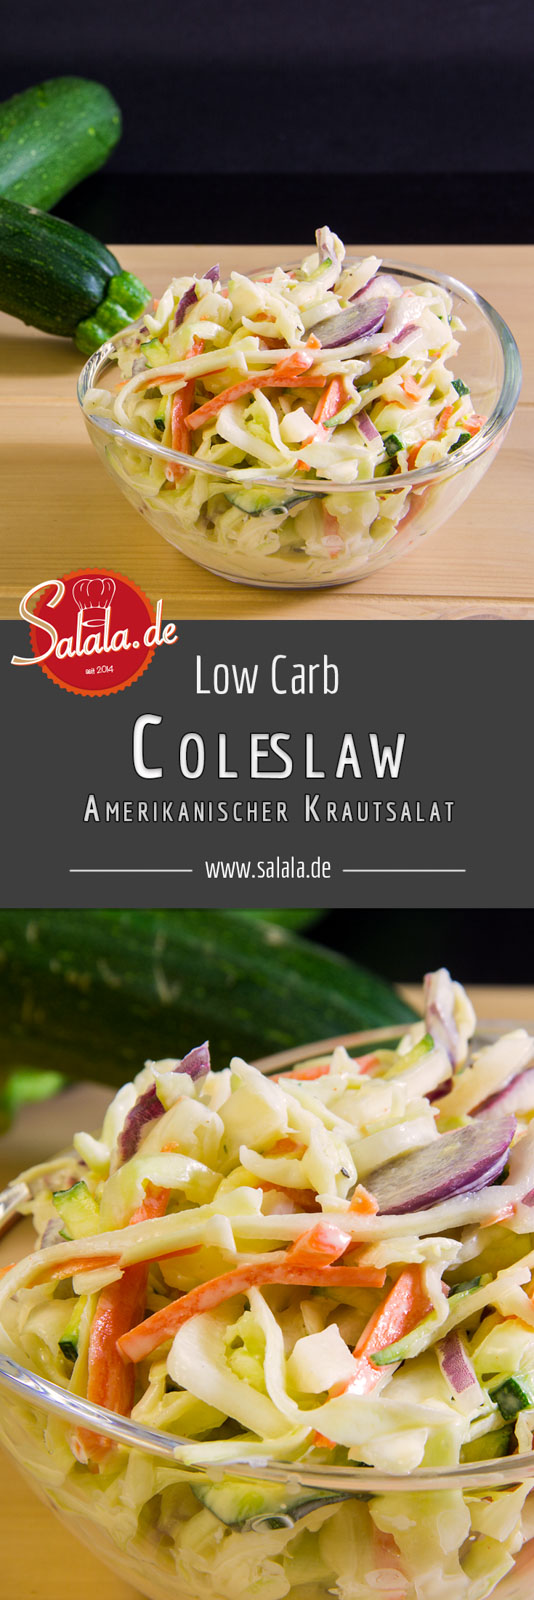 Low Carb Coleslaw – dem Kraut sein Salat Es ist ja eher des Ami’s Krautsalat, denn die „Krauts“ sind ja wir. Anyway, wir haben den Low Carb Krautsalat für dich jetzt verfilmt. Wir haben uns ja bekanntermaßen zur Aufgabe gemacht alle unsere Rezepte in zum Bewegtbild zu formen.